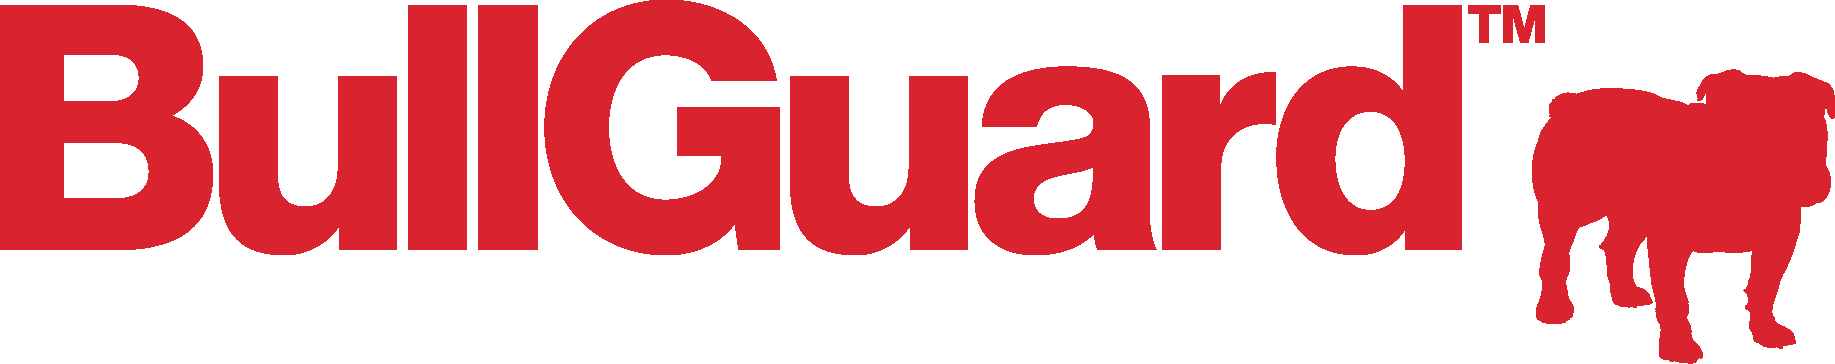 službeni logo bullguard vpn